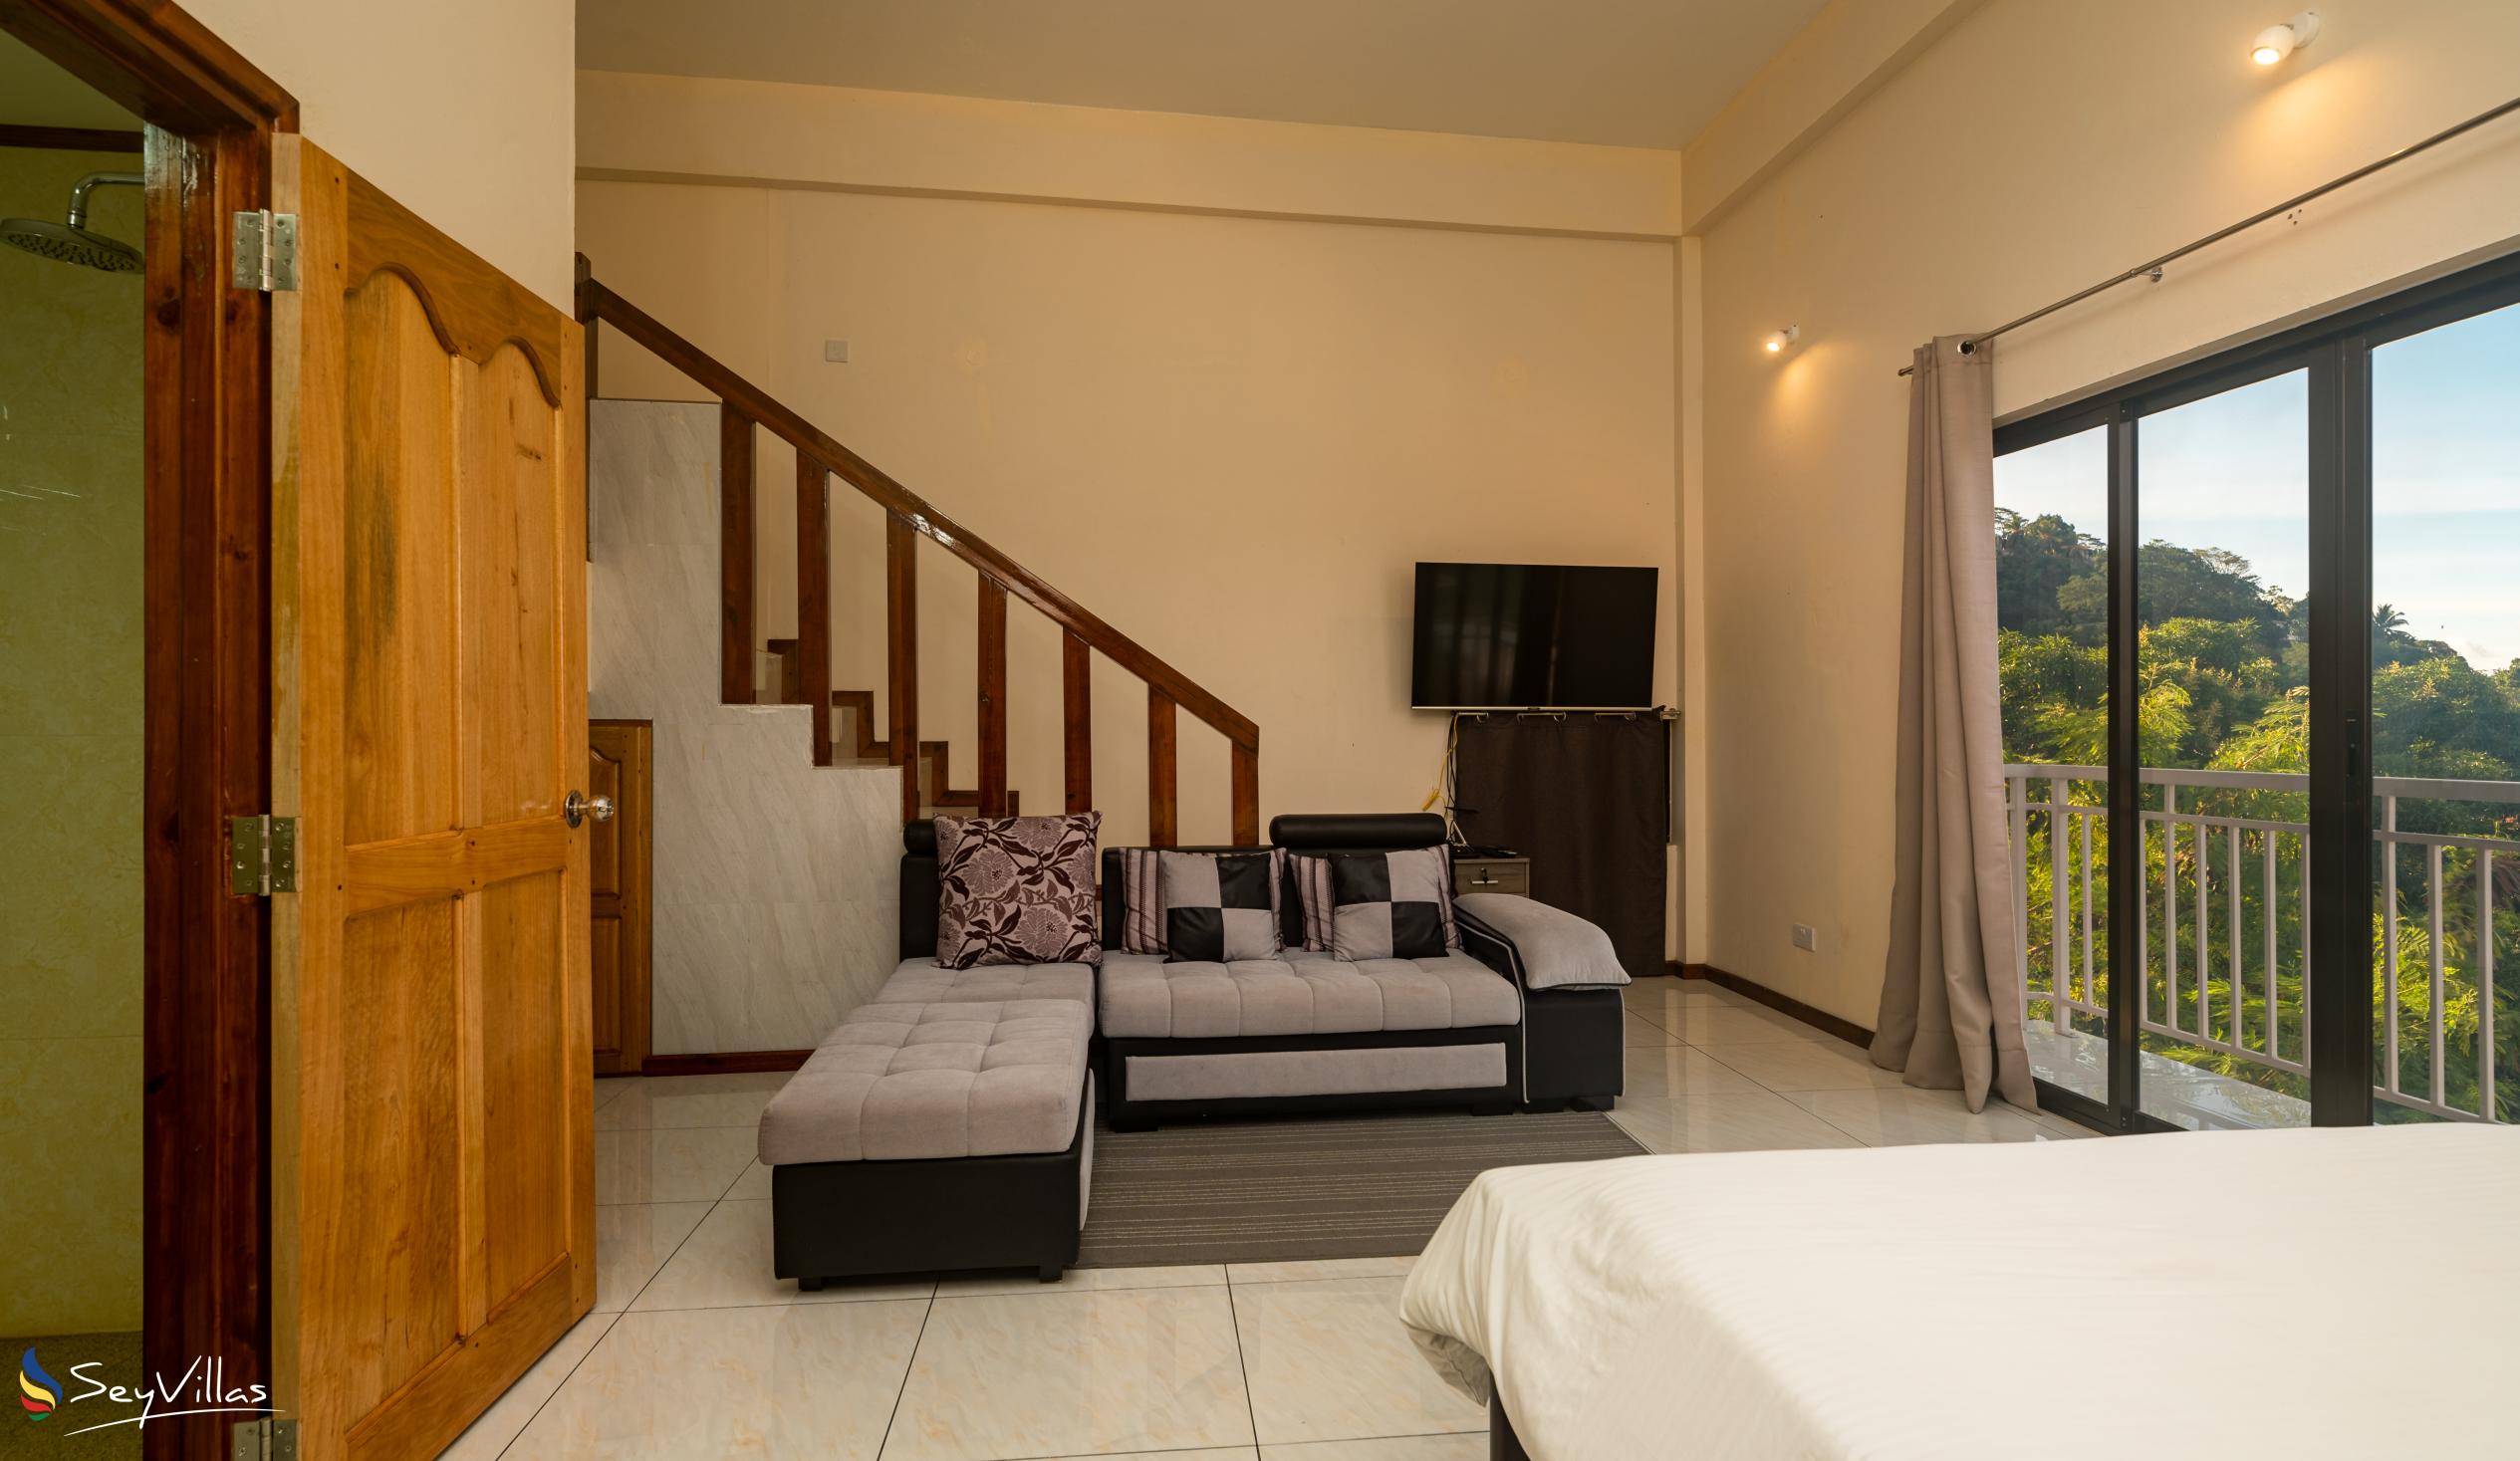 Foto 55: Maison L'Horizon - Appartement 1 chambre Lalin - Mahé (Seychelles)